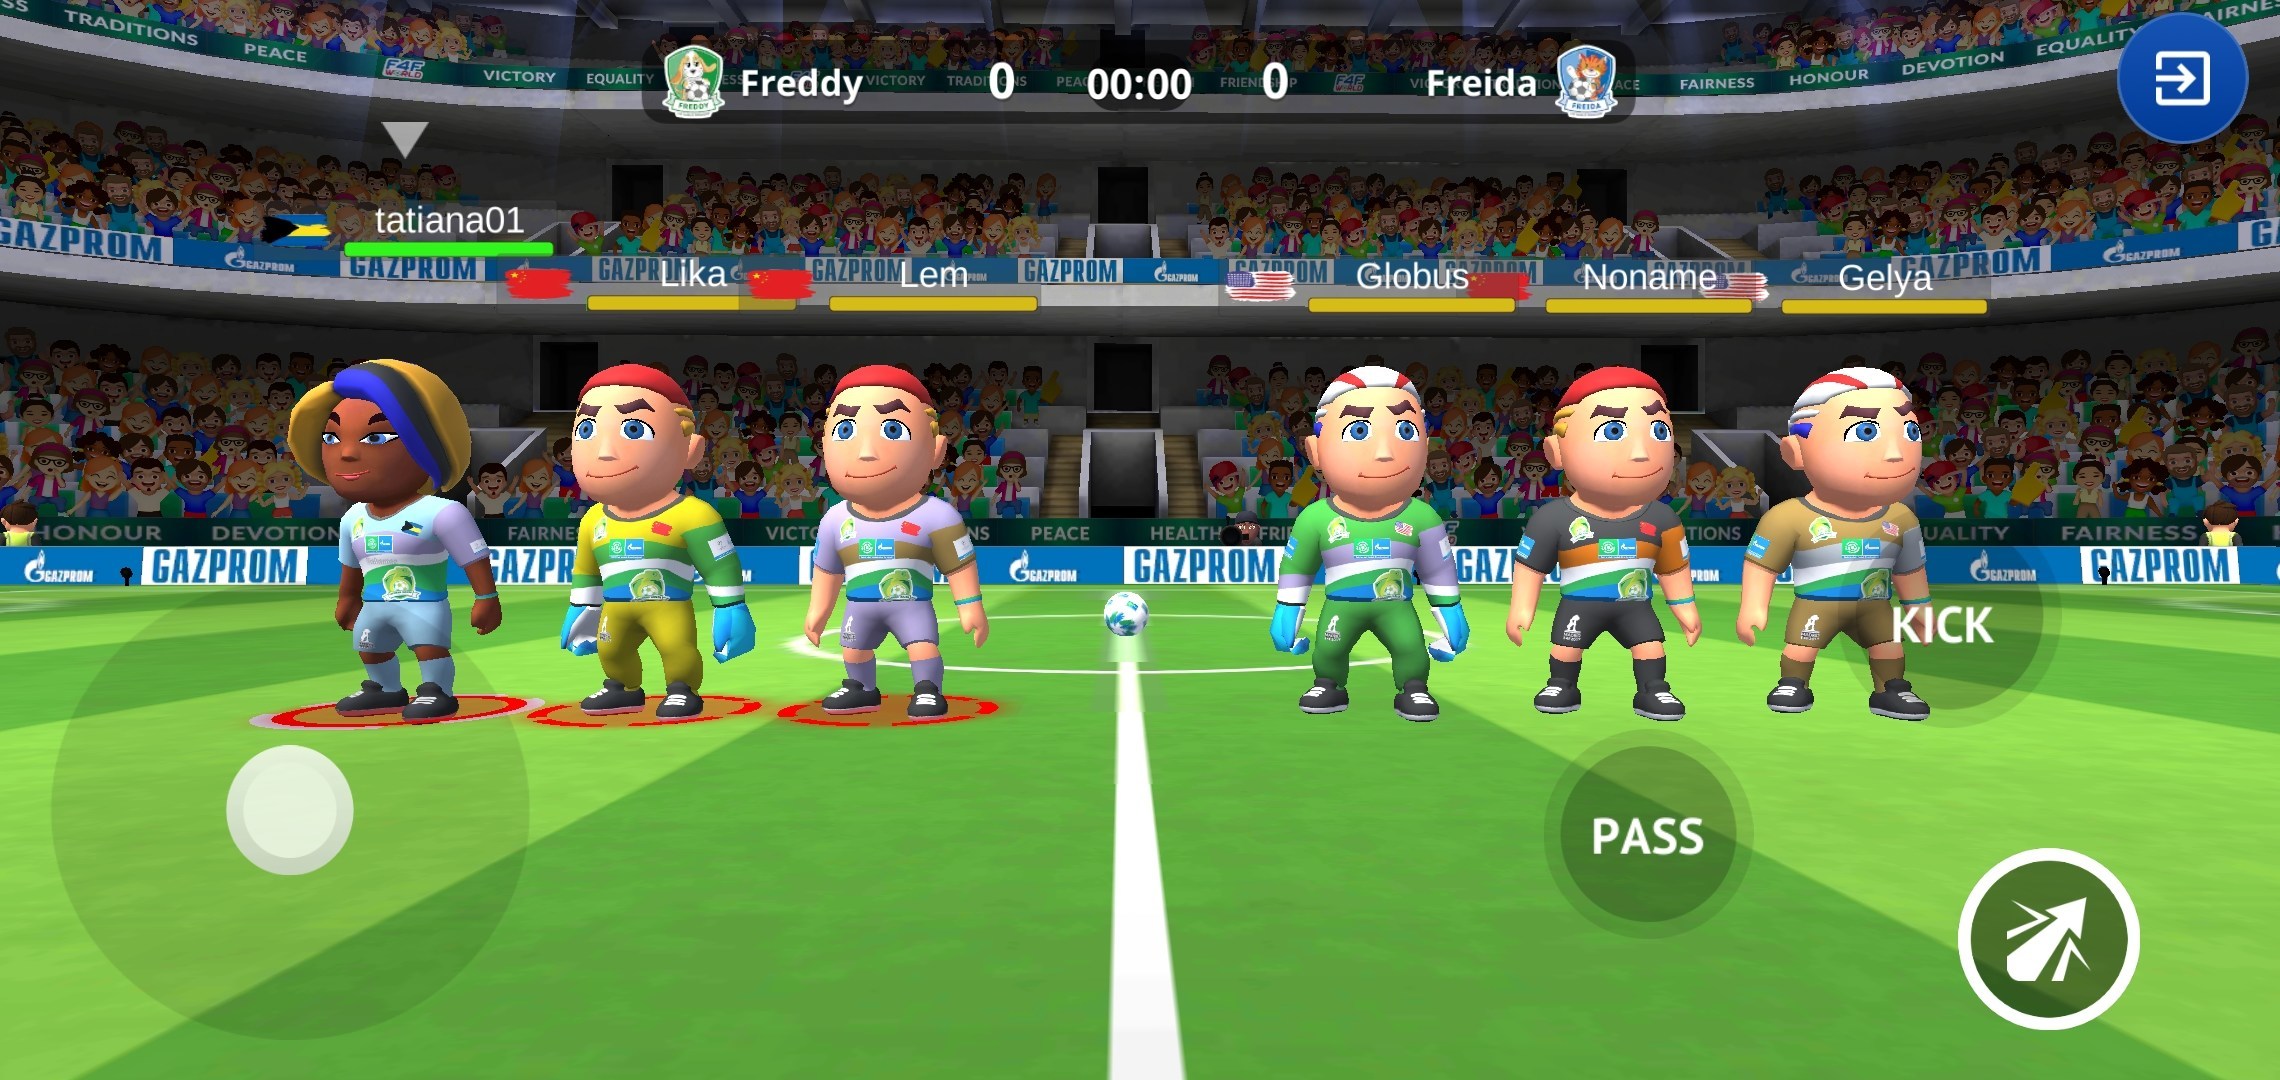 新作サッカーシミュレーションゲームfootball For Friendship World 世界サッカーの日に合わせて公開 Pr Newswire Apac